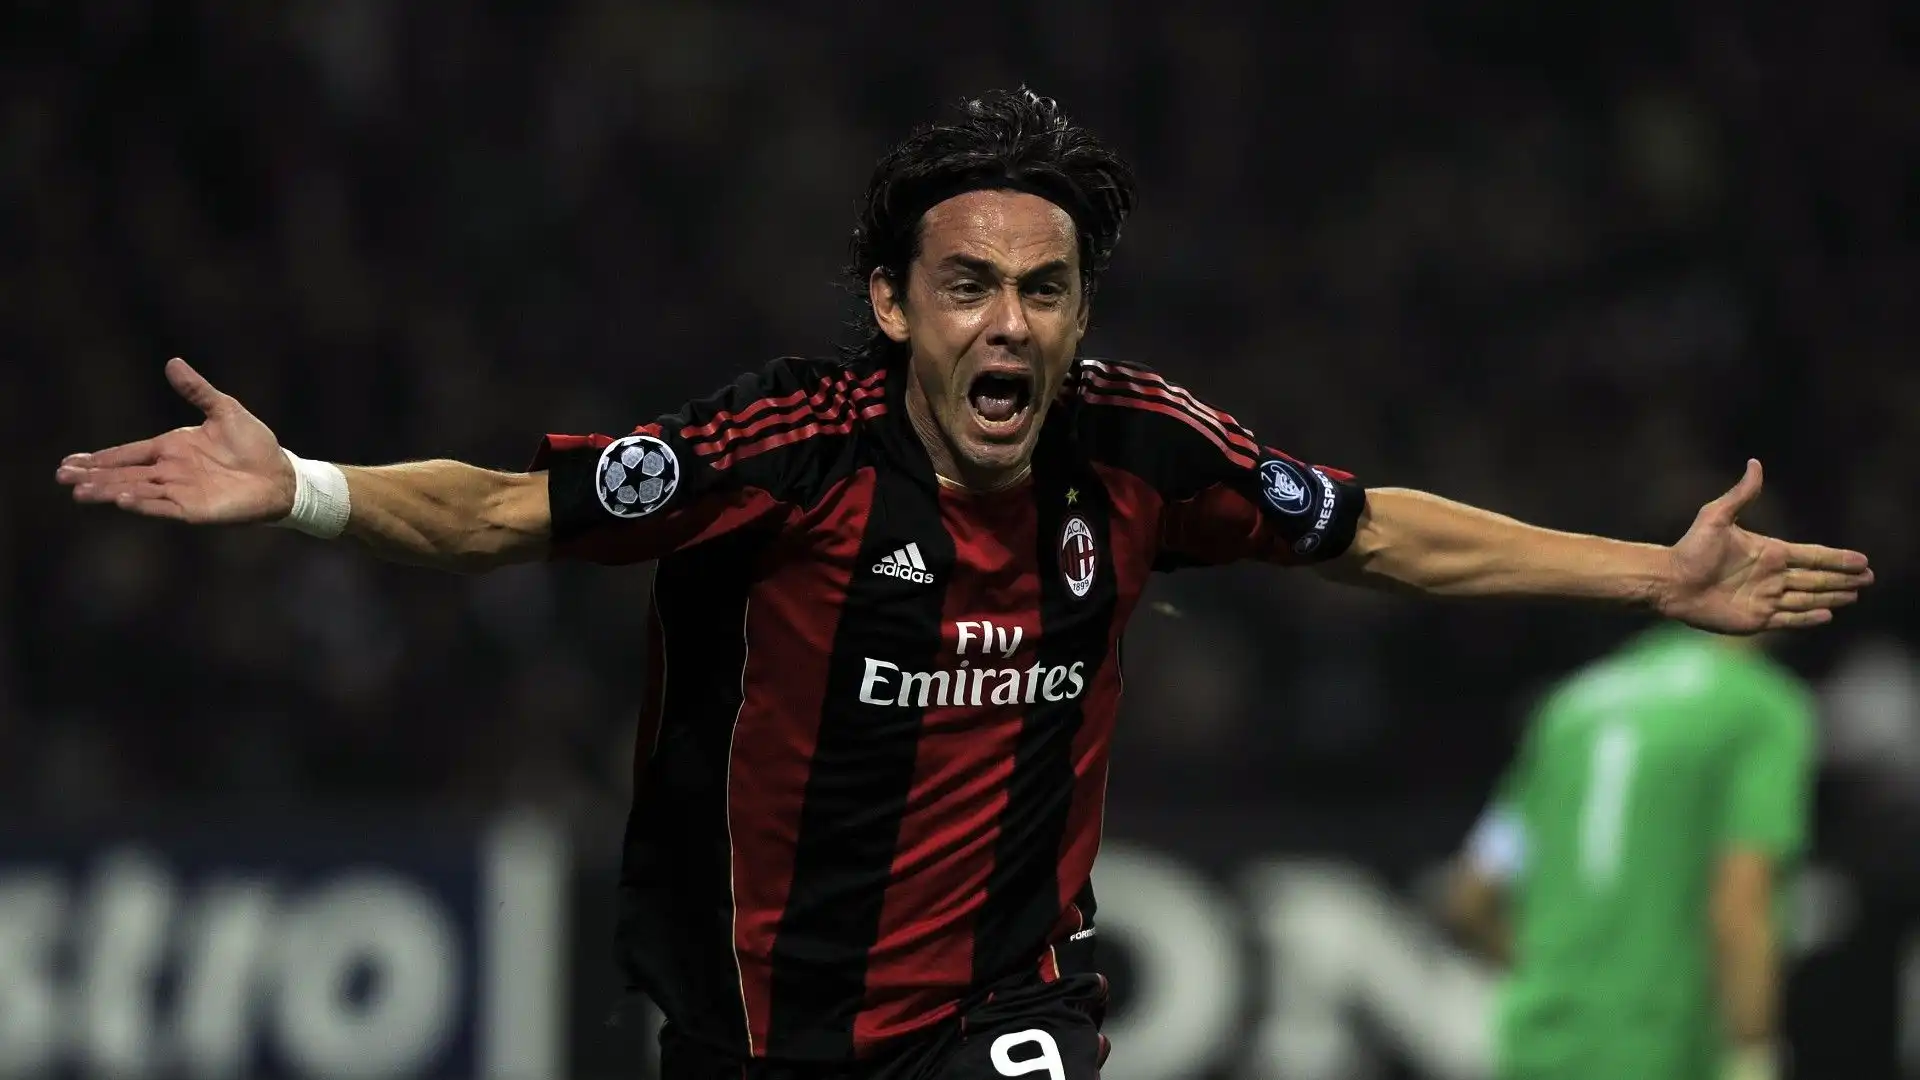 Filippo Inzaghi (09/08/73) Milan-Real Madrid 03/11/2010, 37 anni e 87 giorni